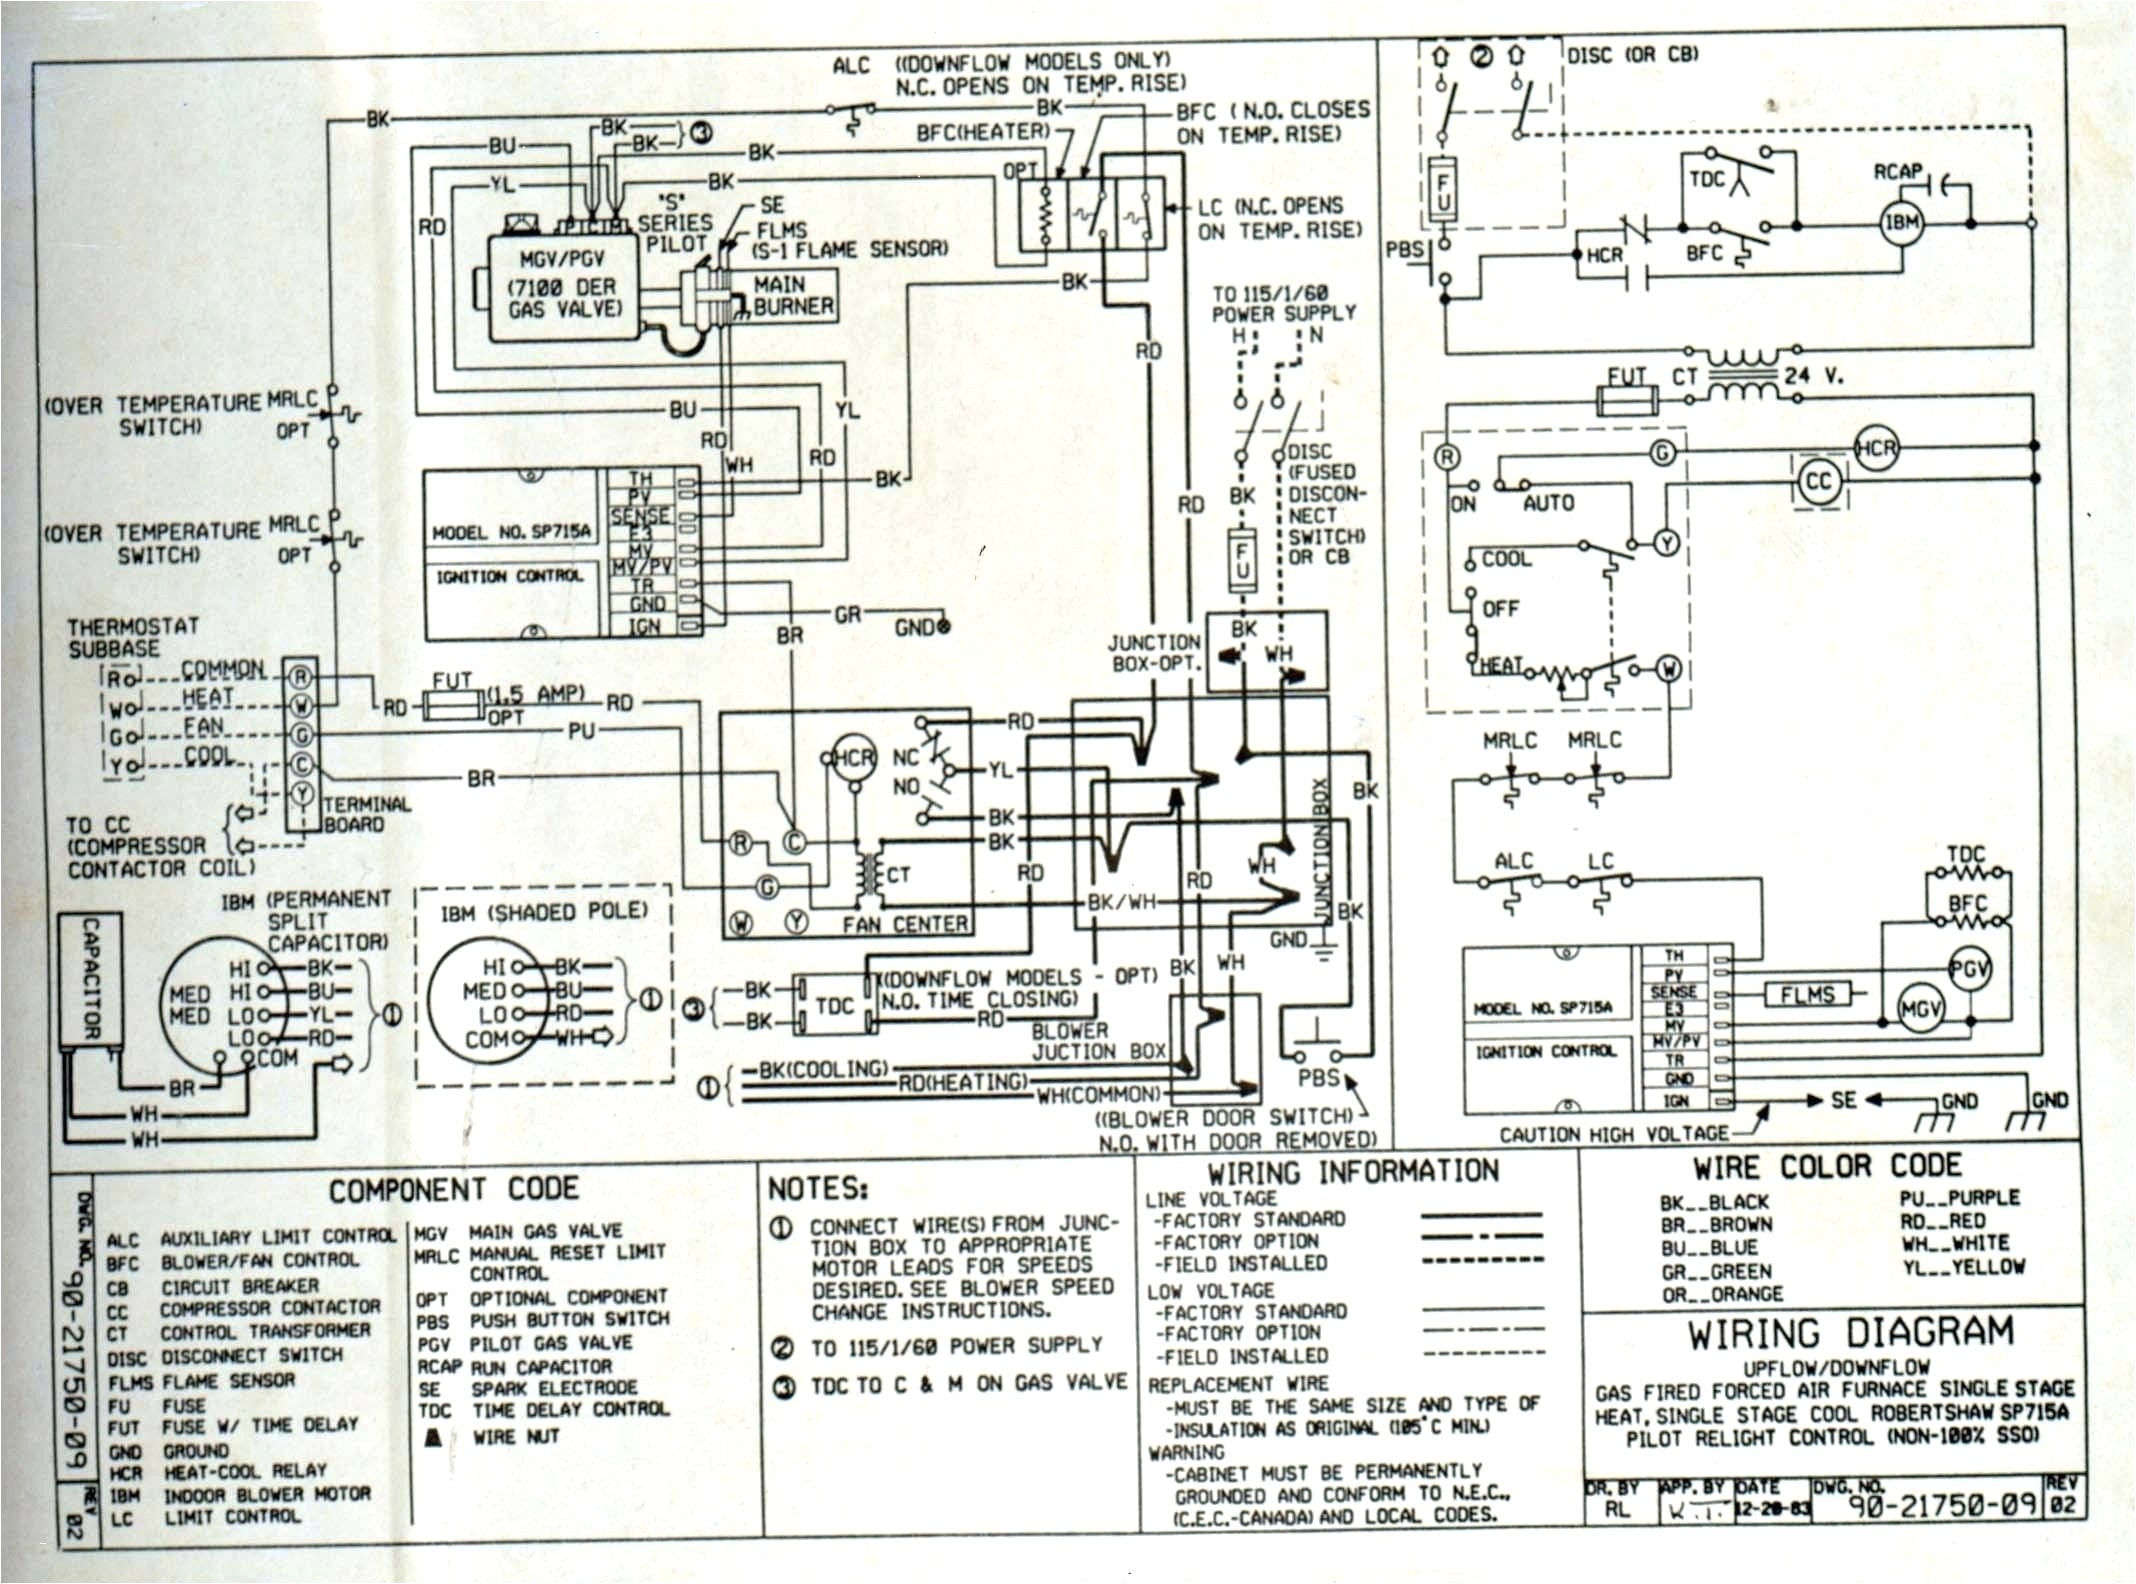 central electric furnace eb15b wiring diagram 15 kw heater coleman central electric furnace l 07b9bb4904d1f073 jpg